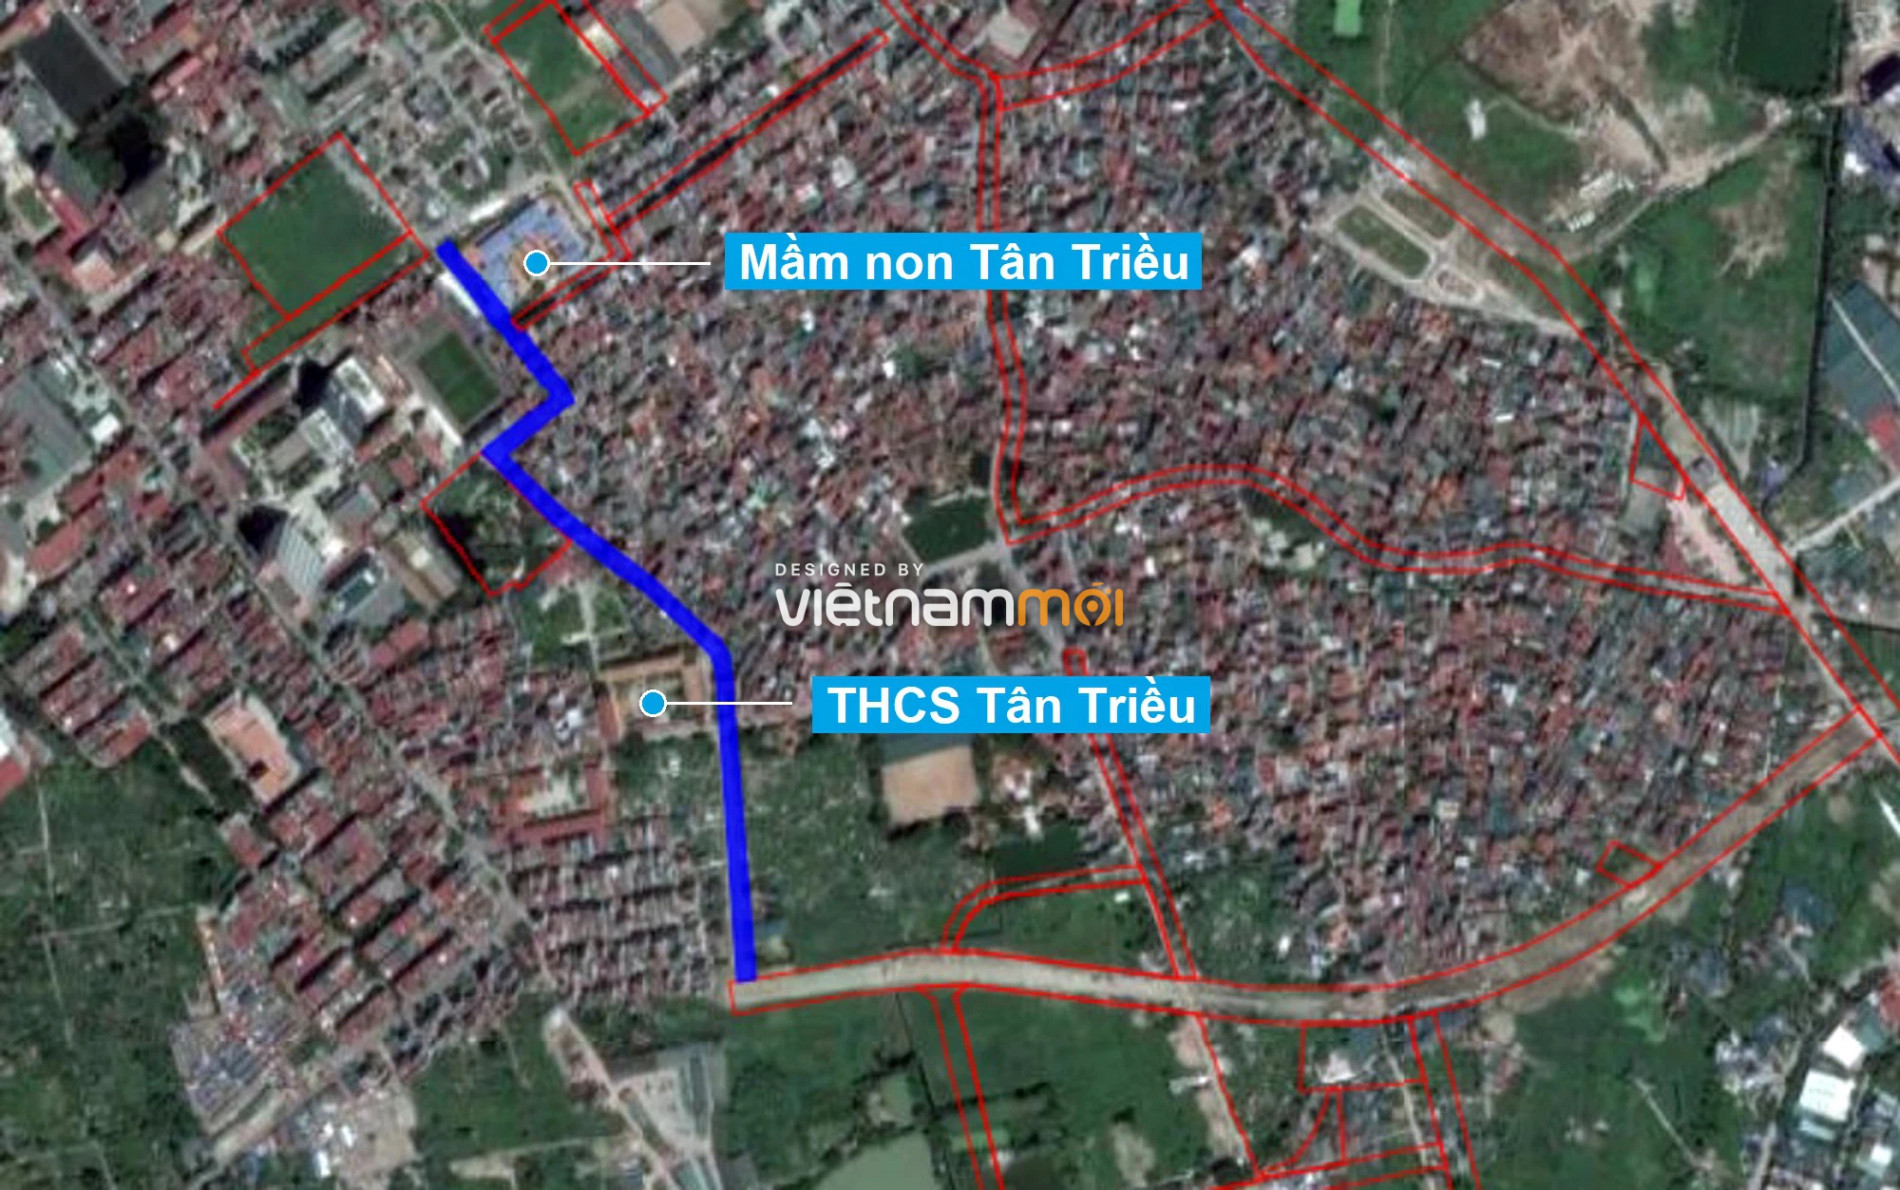 Những khu đất sắp thu hồi để mở đường ở xã Tân Triều, Thanh Trì, Hà Nội (phần 10) - Ảnh 2.